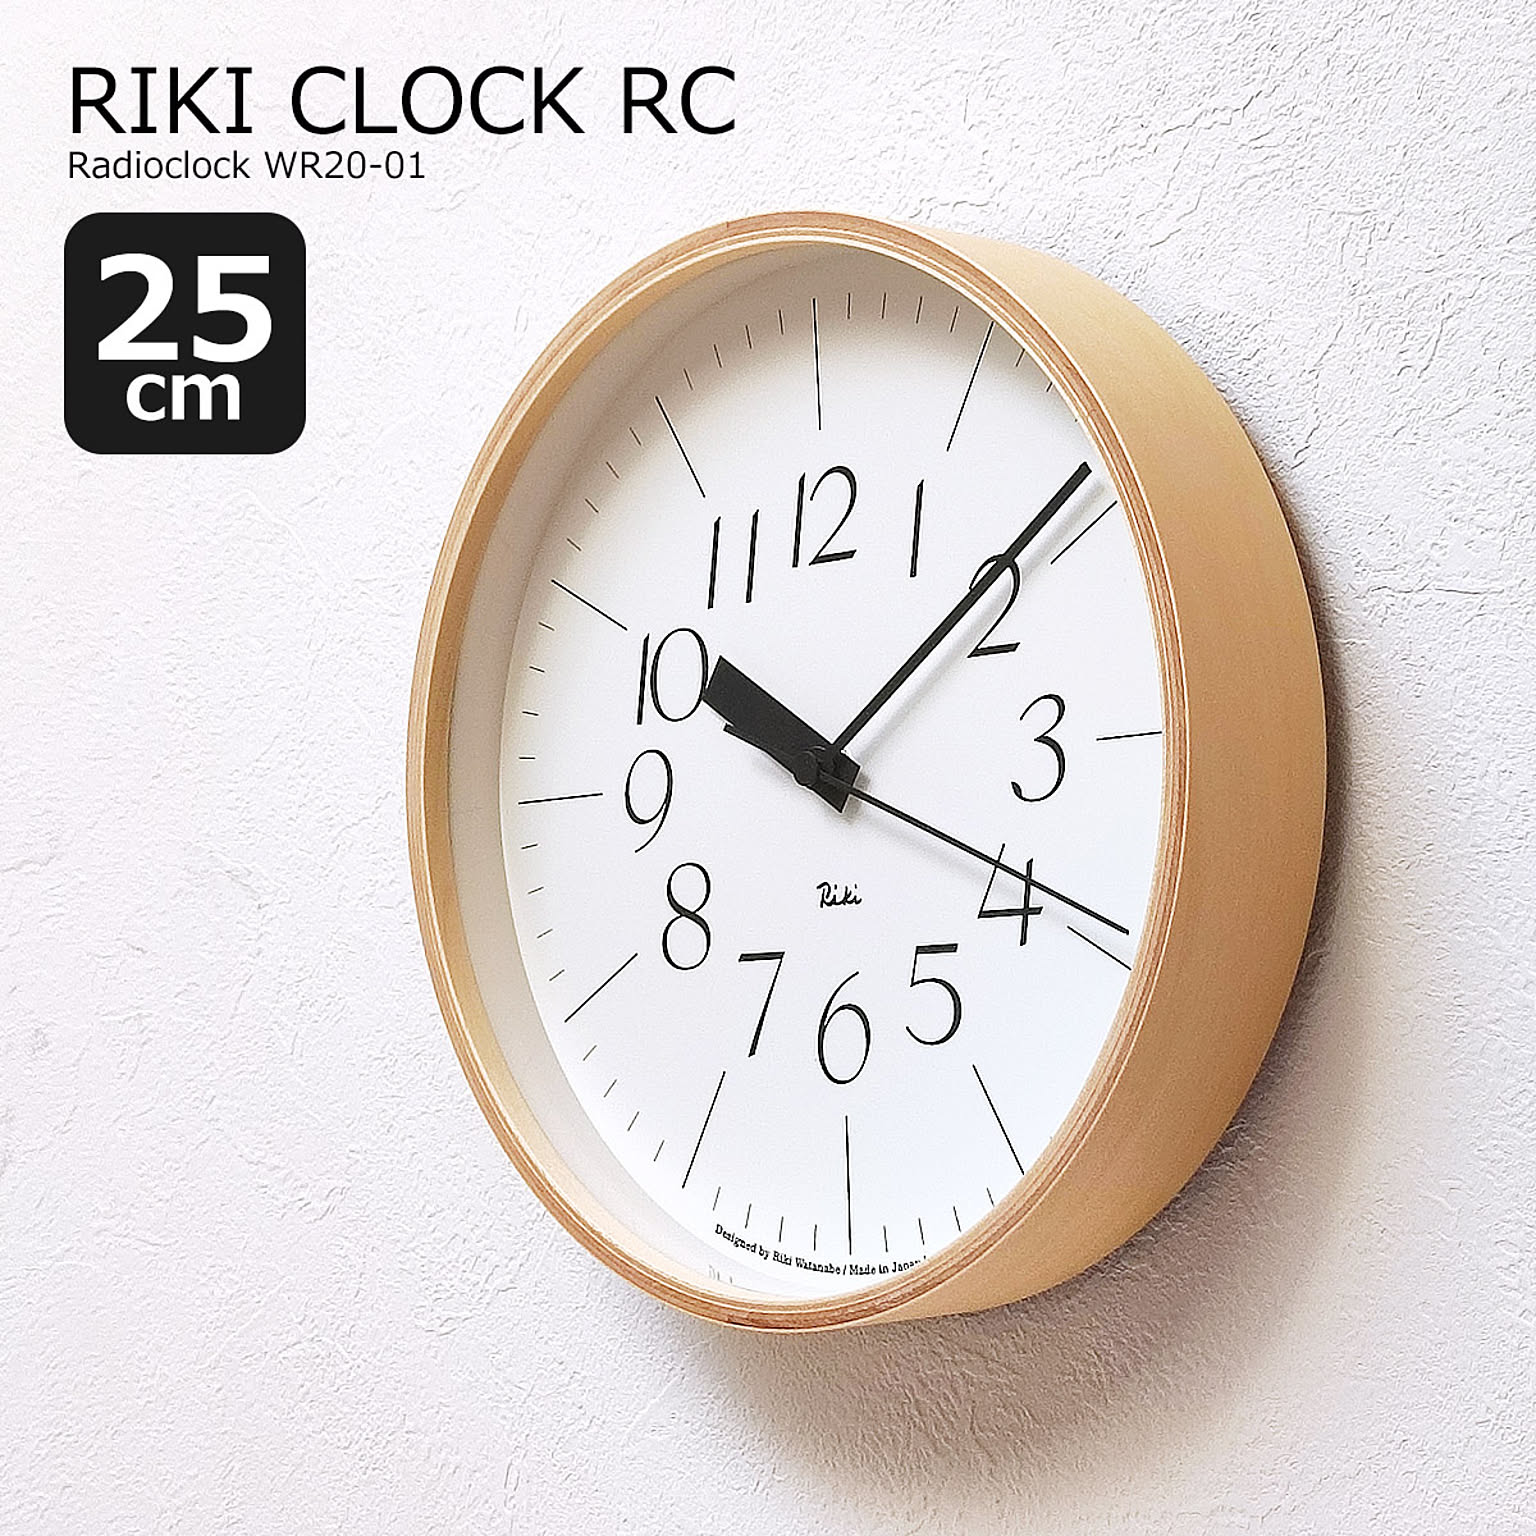 掛け時計 電波時計 おしゃれ 壁掛け時計 時計 電波 北欧 RIKI CLOCK RC リキ クロック アールシー 25cm WR20-01 木製 モダン シンプル ナチュラル リビング ダイニング 